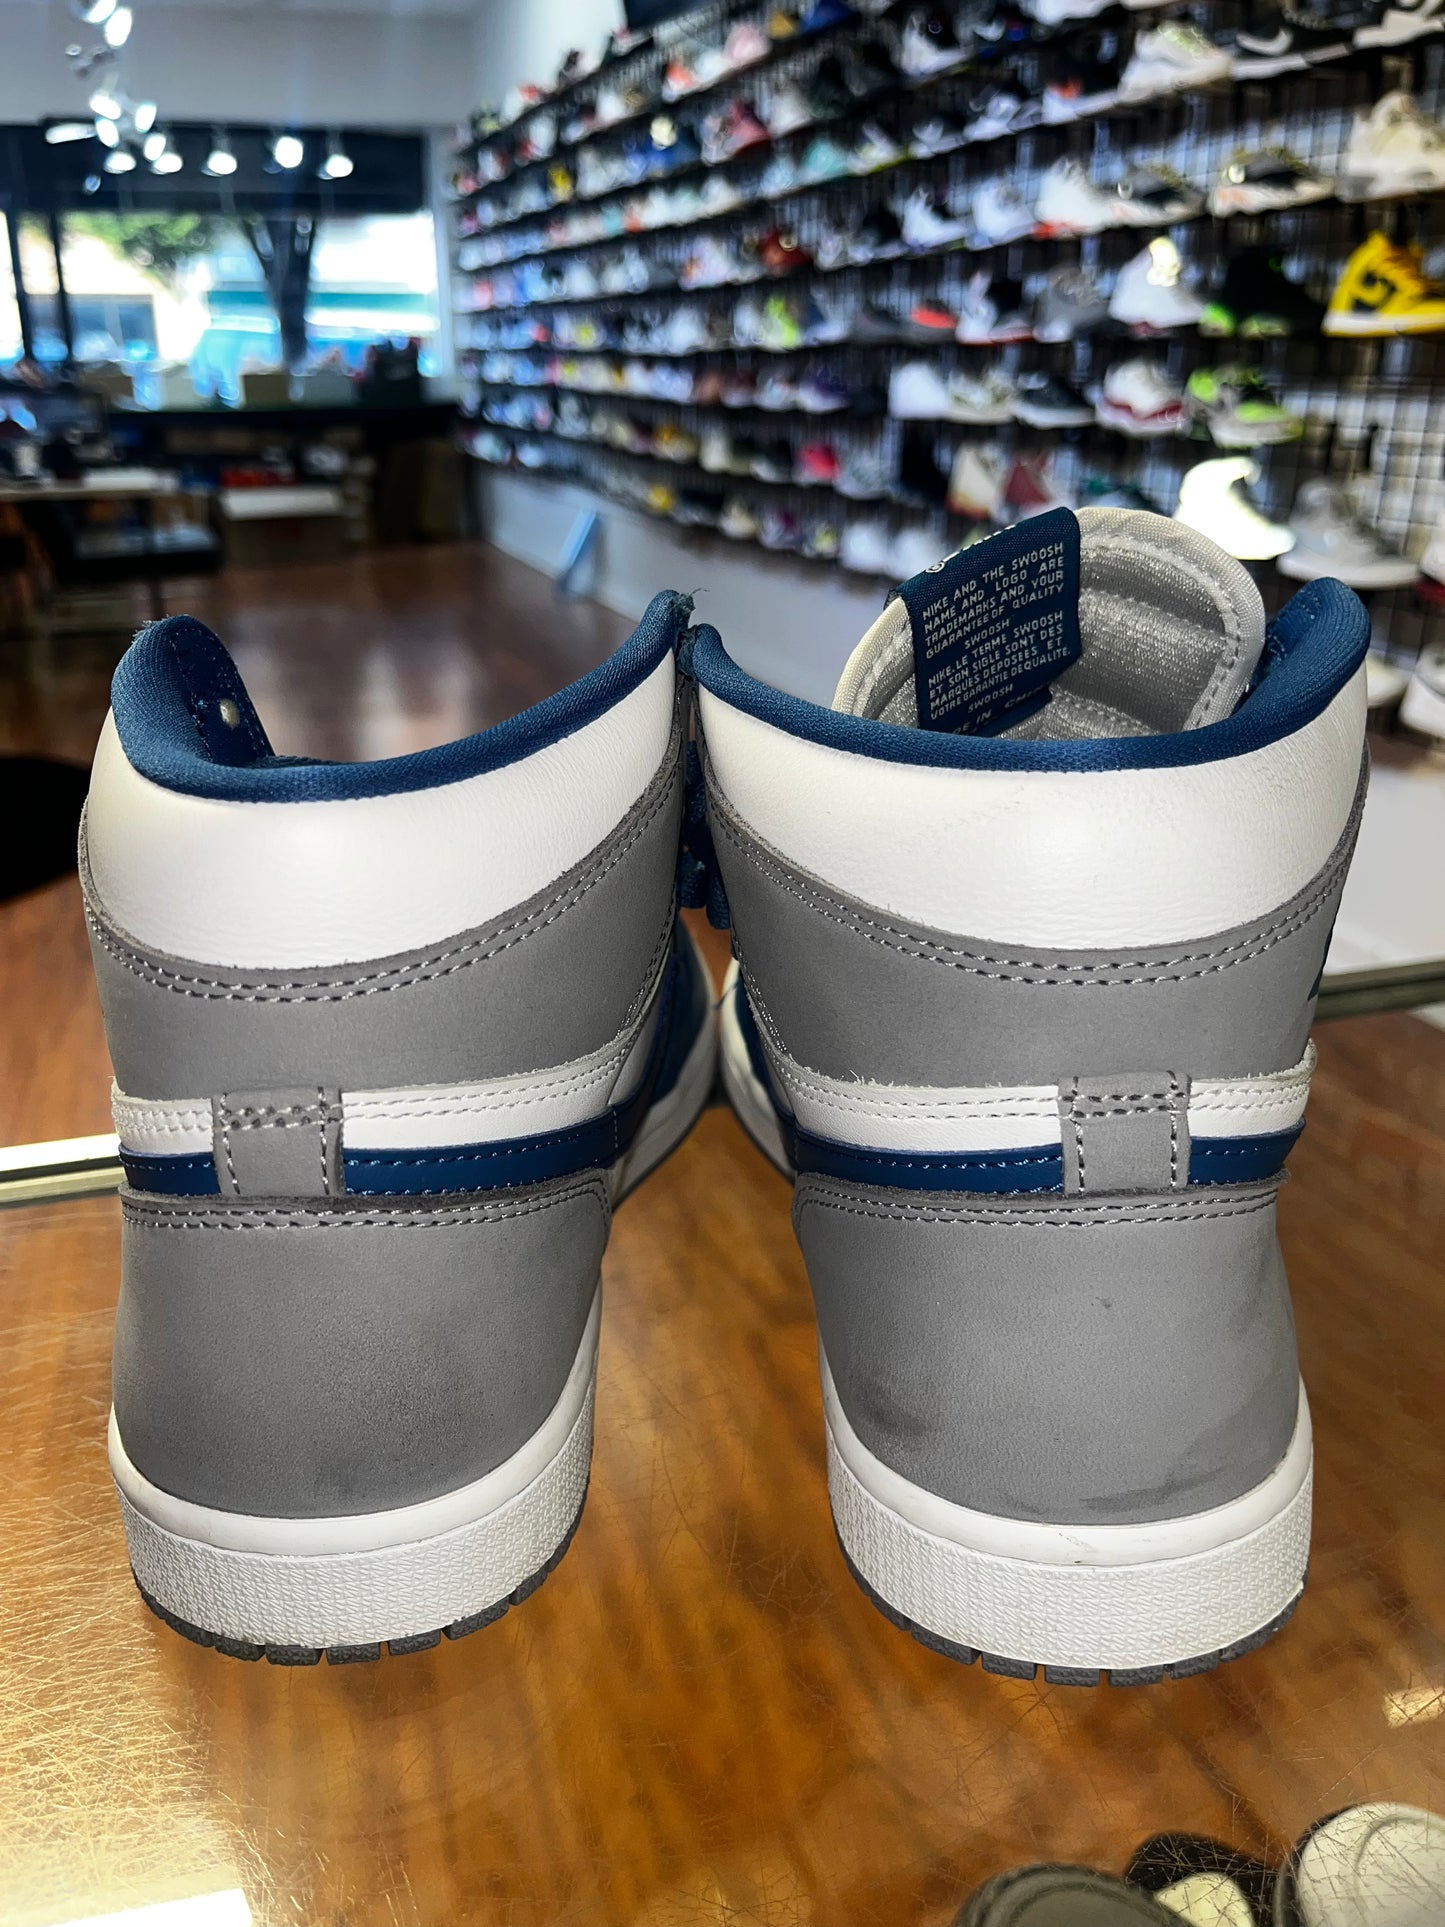 Size 8.5 Air Jordan 1 "True Blue" (MAMO)